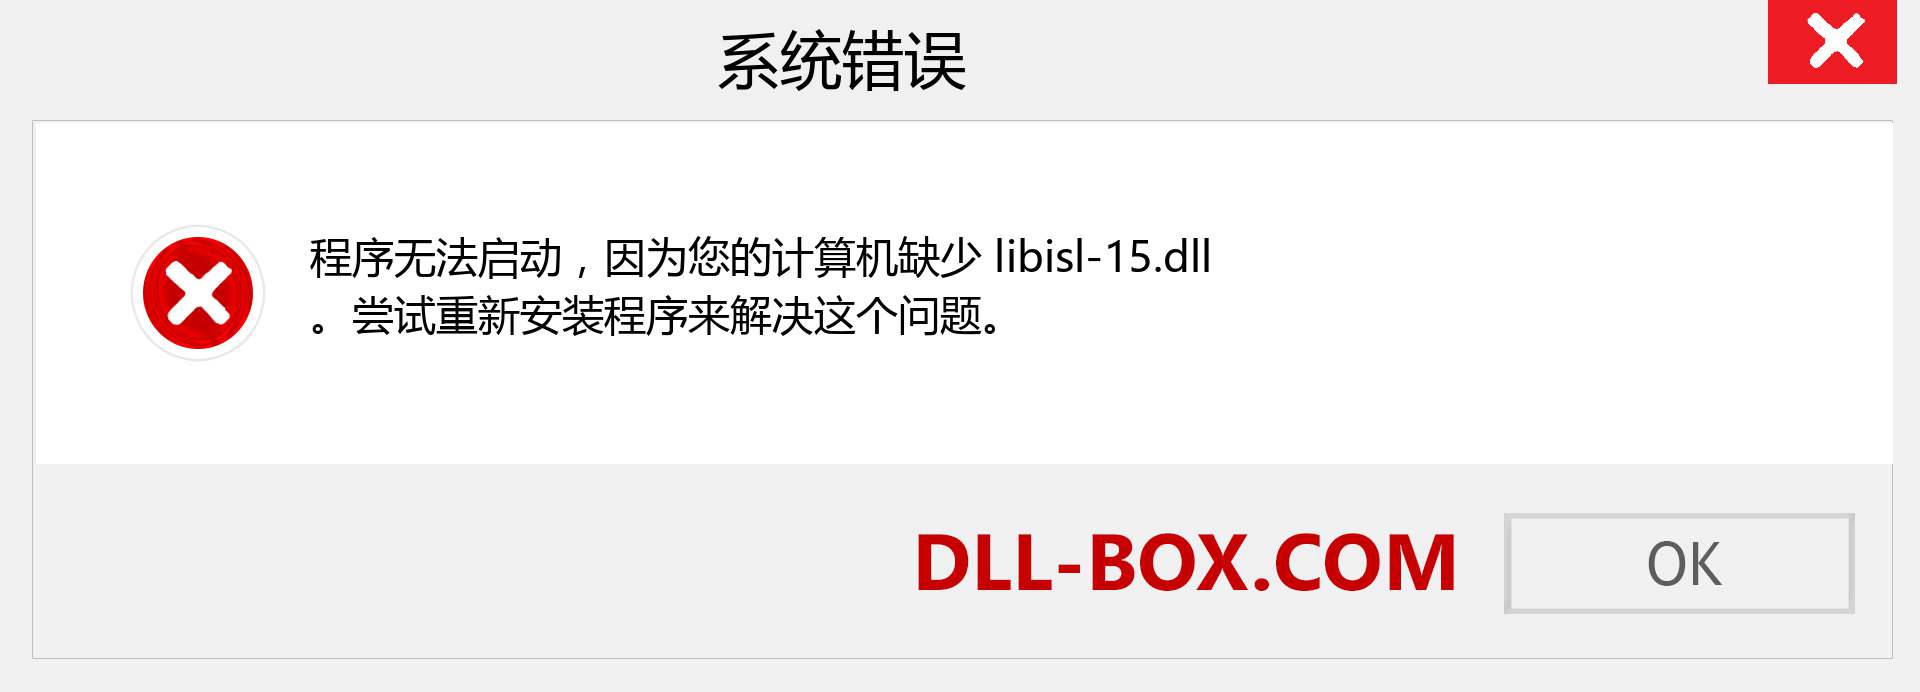 libisl-15.dll 文件丢失？。 适用于 Windows 7、8、10 的下载 - 修复 Windows、照片、图像上的 libisl-15 dll 丢失错误